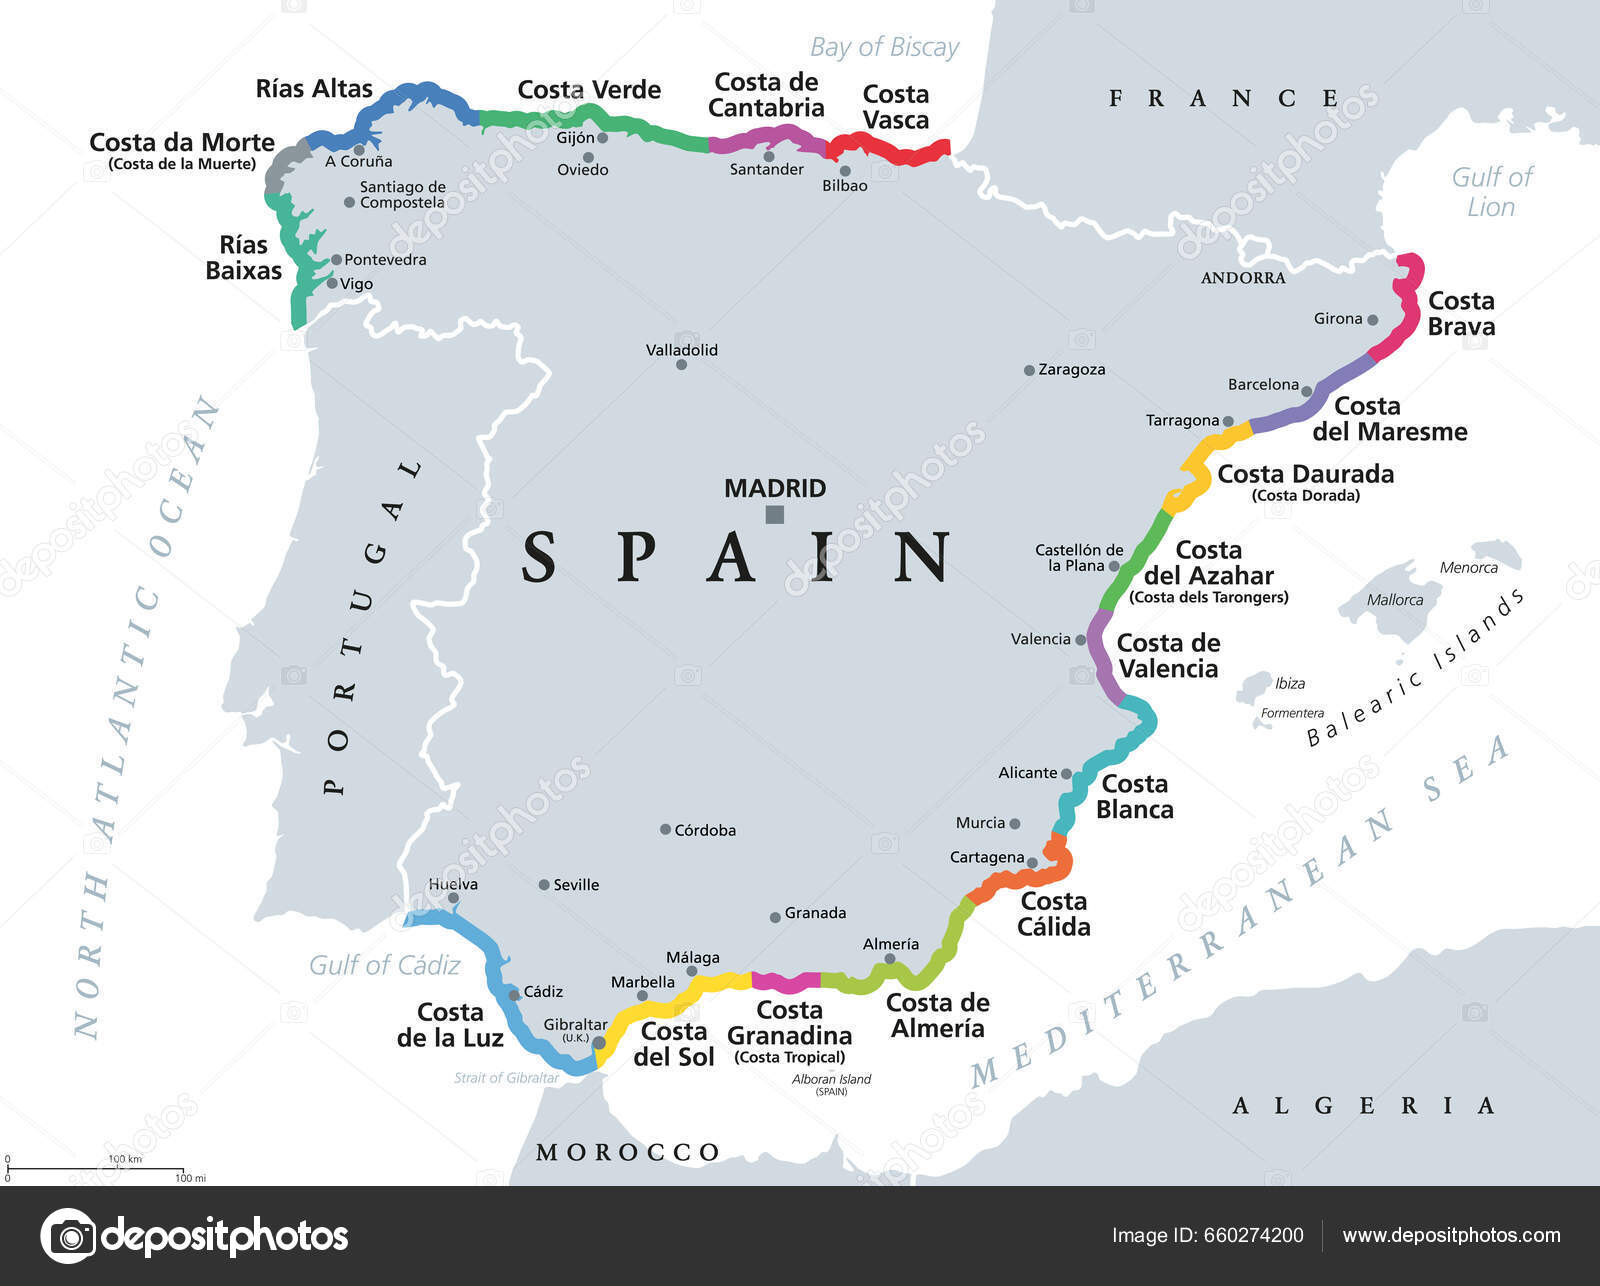 Mapa político de Portugal e Espanha vetor(es) de stock de ©Furian